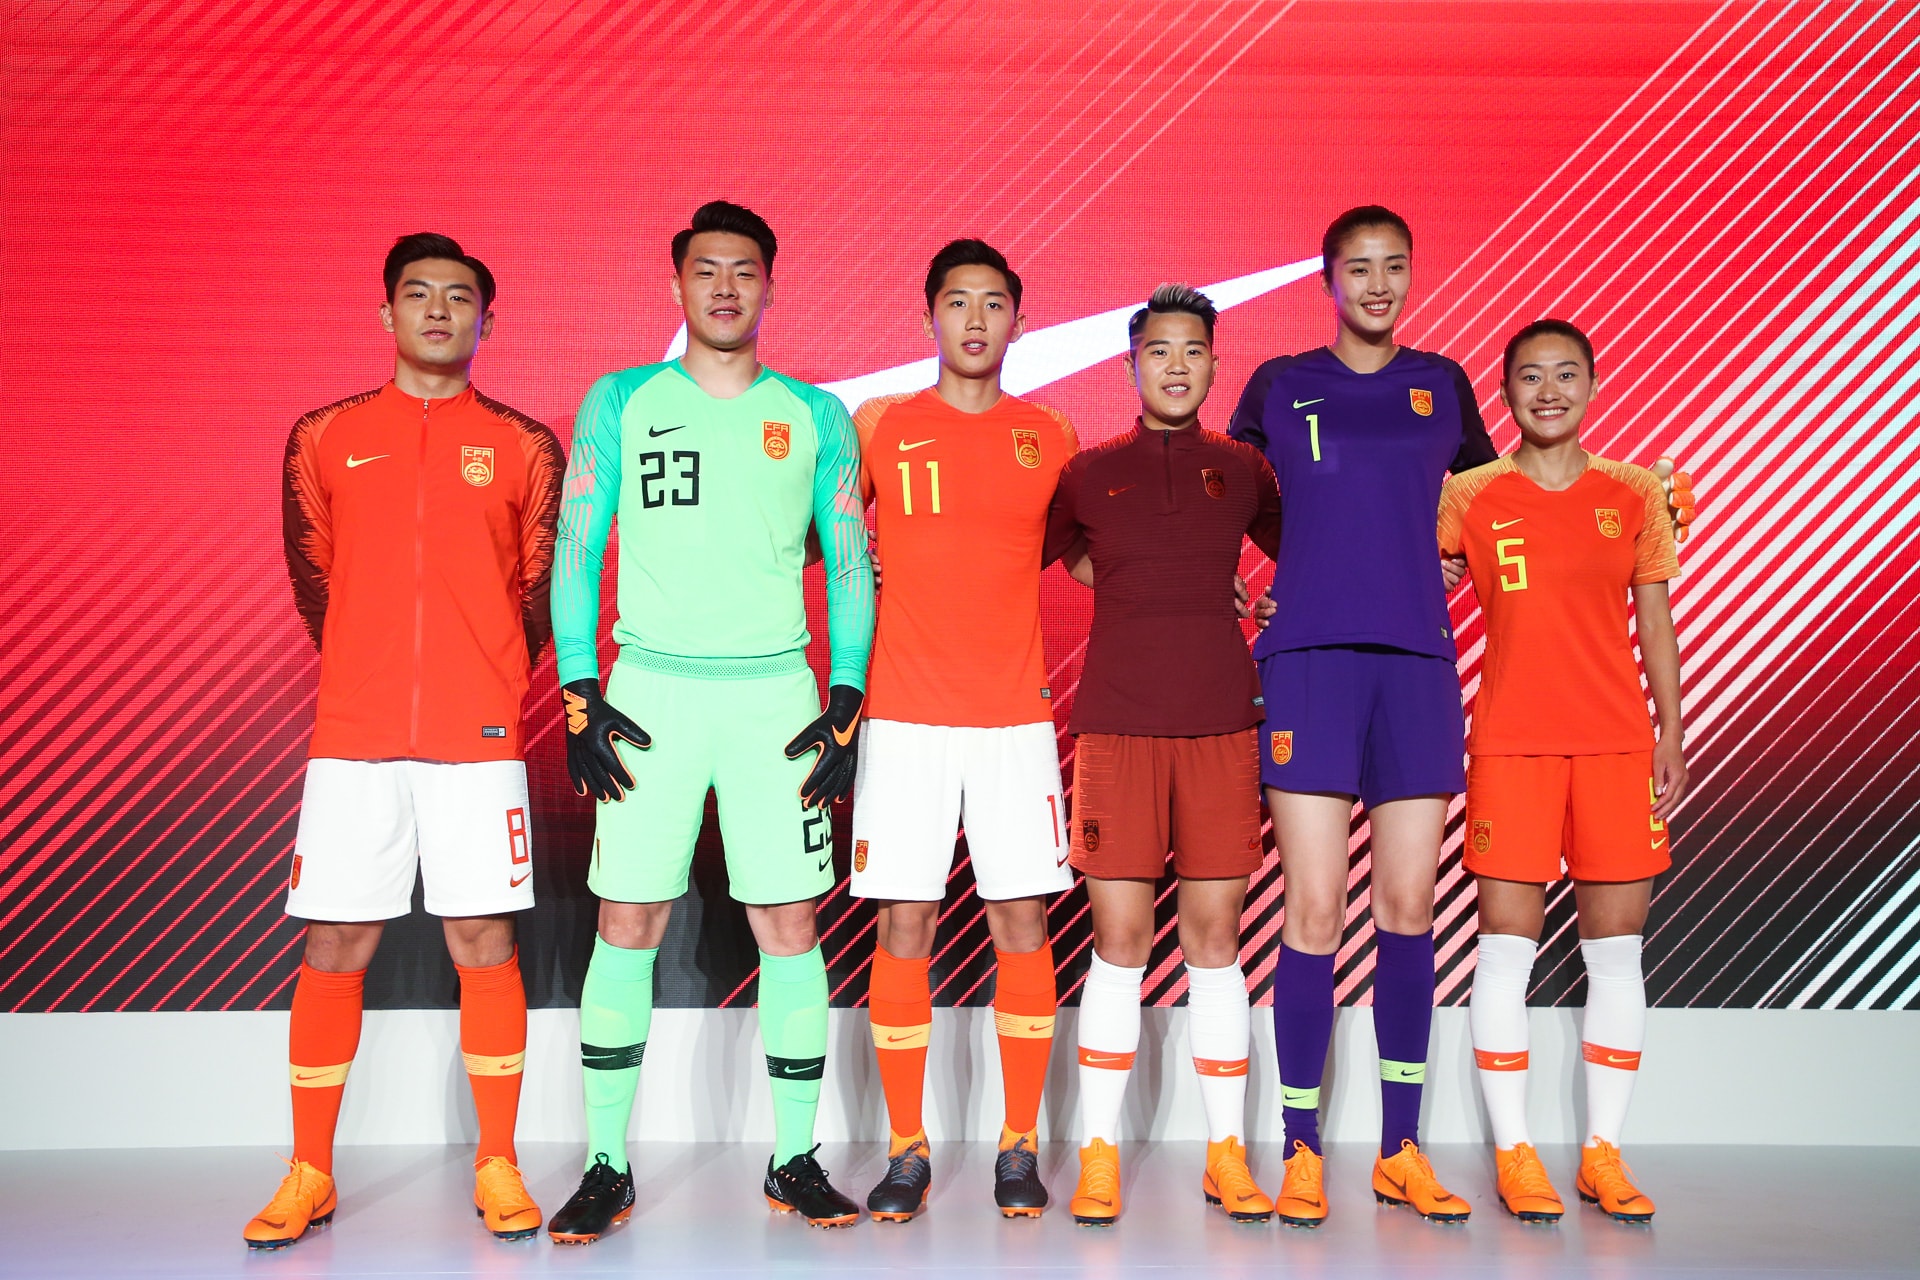 直击 Nike 2018 中国足球发布会现场